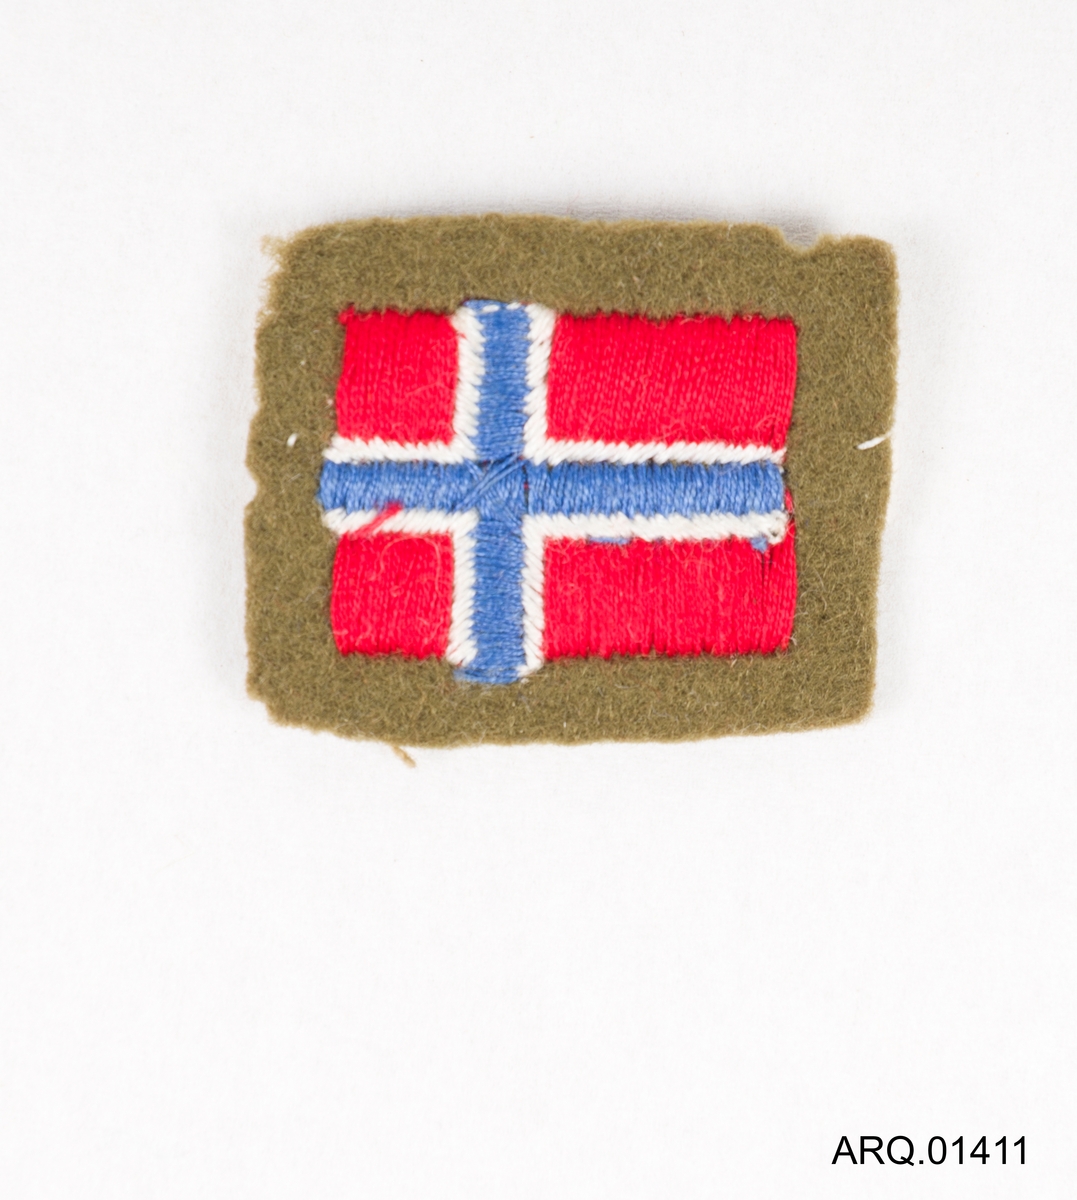 Det norske flagget bodert på et ullstykke. Trolig klippet ut av en jakke.